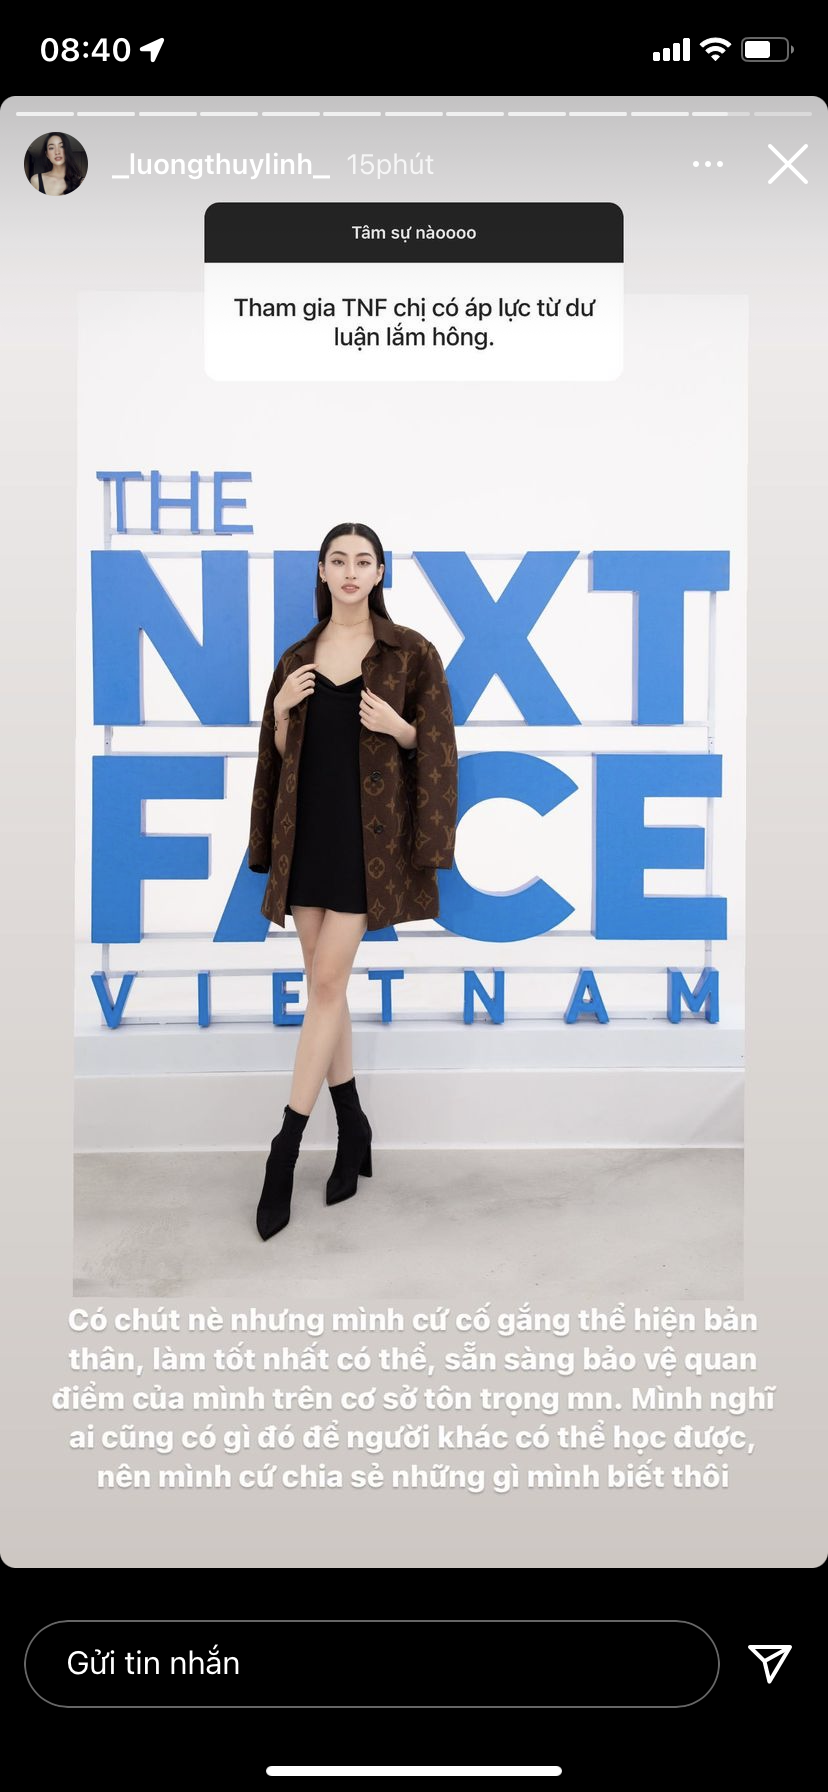 Lương Thùy Linh dự đoán vị trí của Đỗ Thị Hà tại Miss World 2021: Top 1 - Ảnh 3